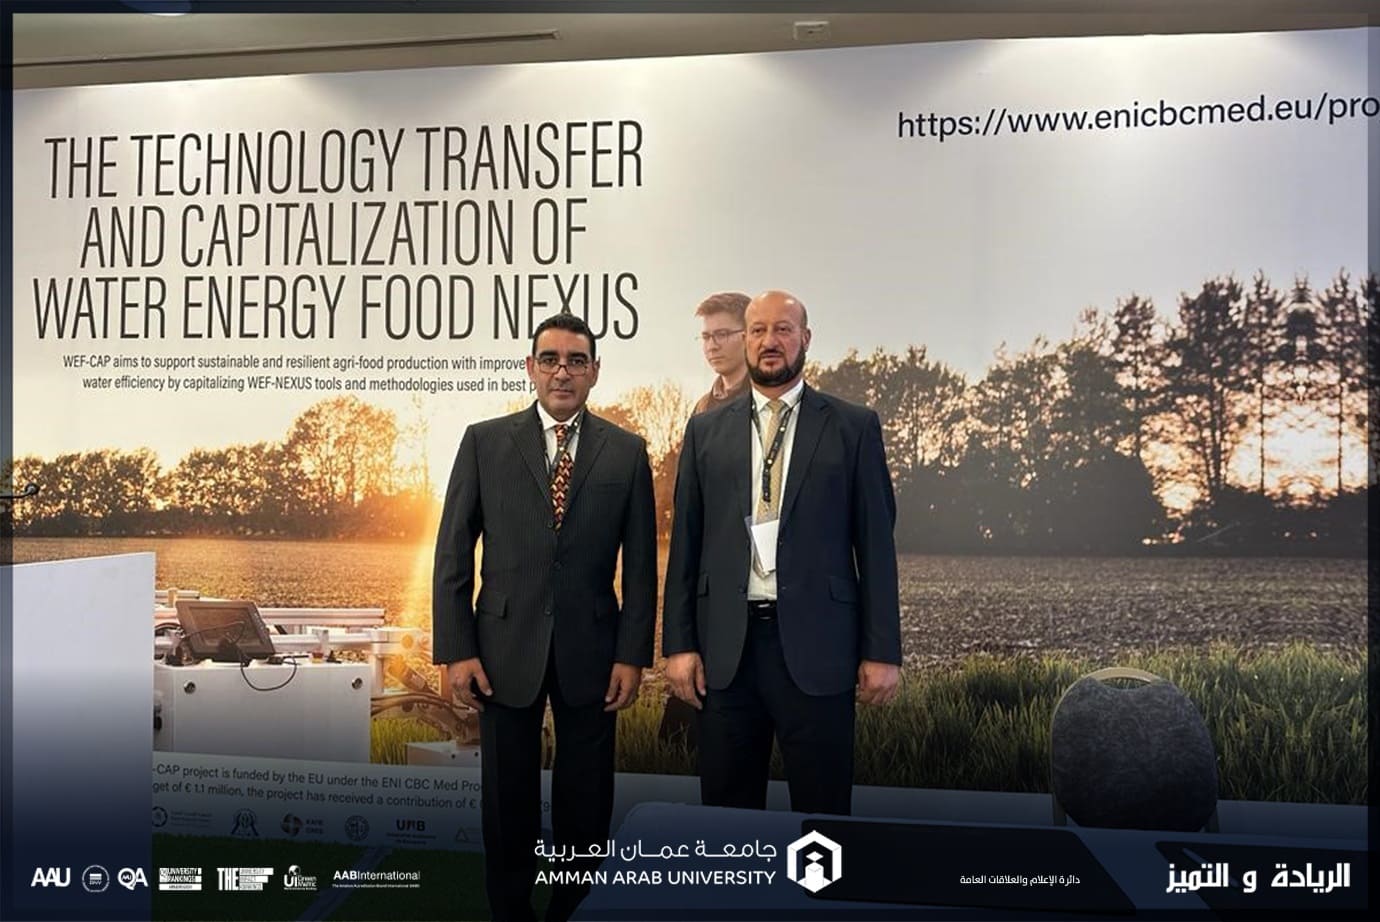 هندسة "عمان العربية" تشارك في المؤتمر الدولي لنقل التكنولوجيا ورسملة علاقة المياه والطاقة والغذاء (WEF-CAP)